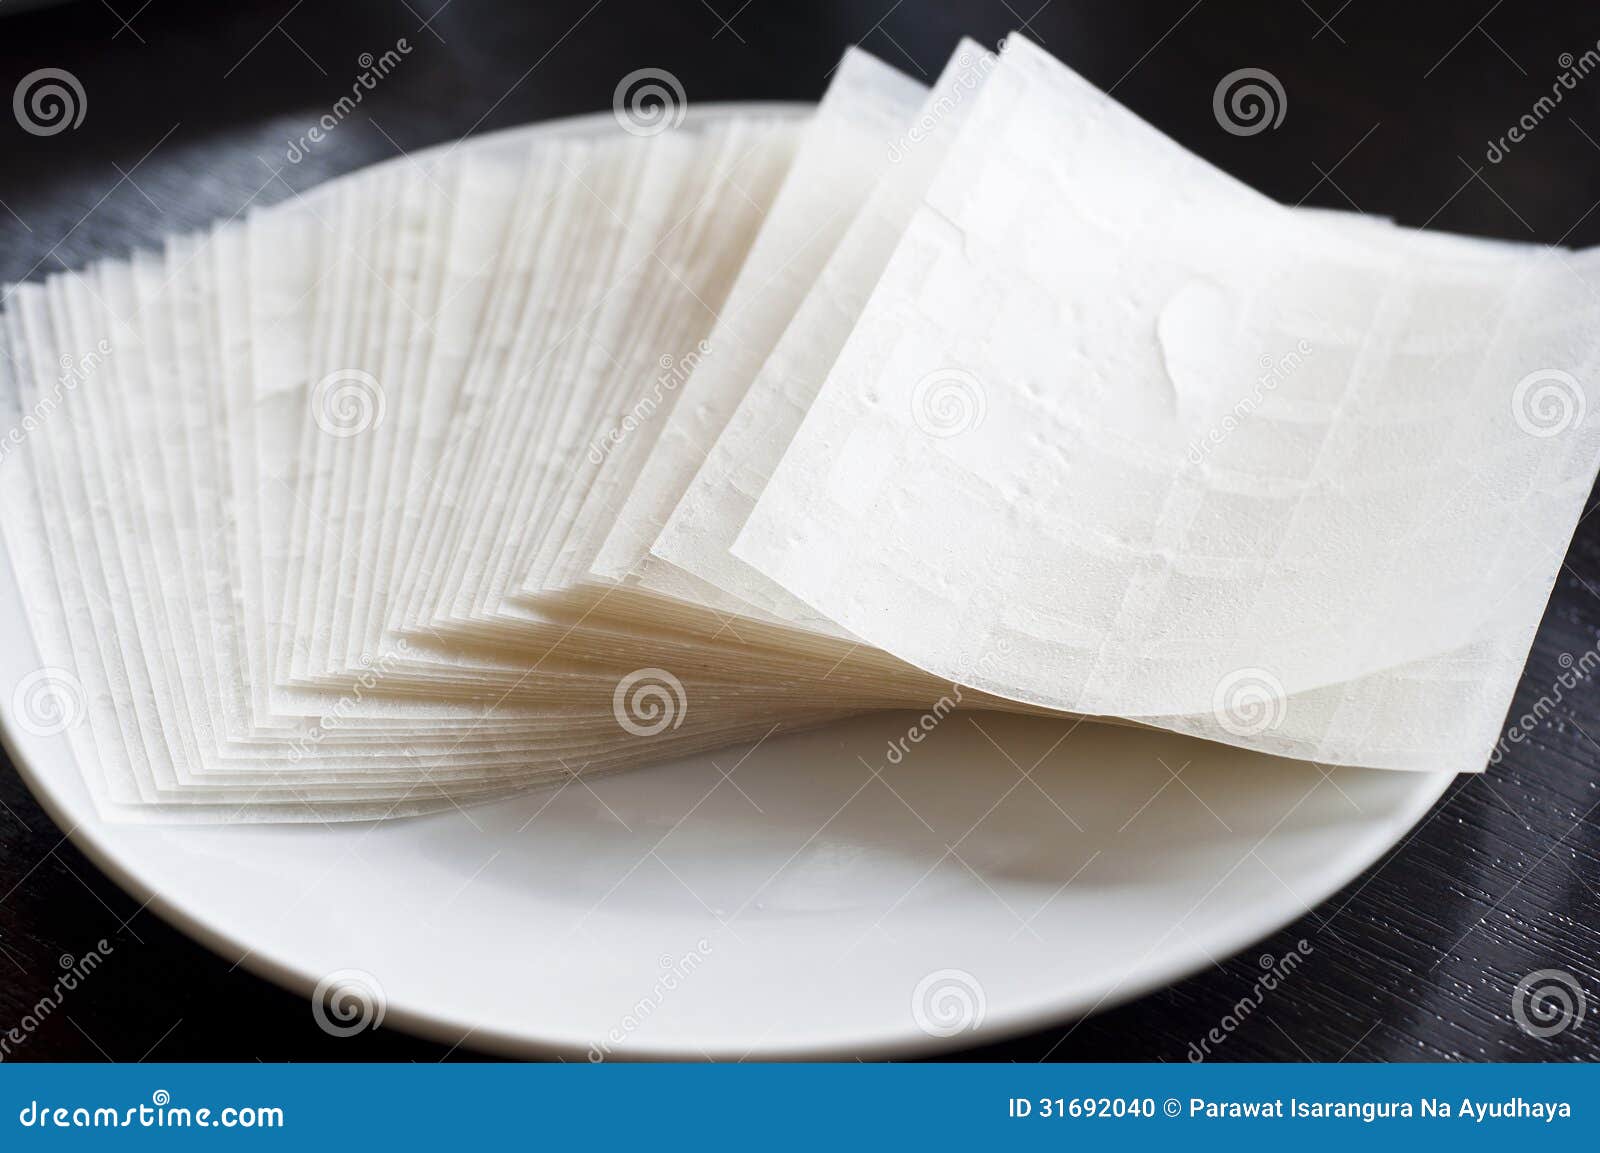 Бумага из риса. Рисовая бумага. Рисовая бумага съедобная. Рисовая бумага тонкая. Лист рисовой бумаги.